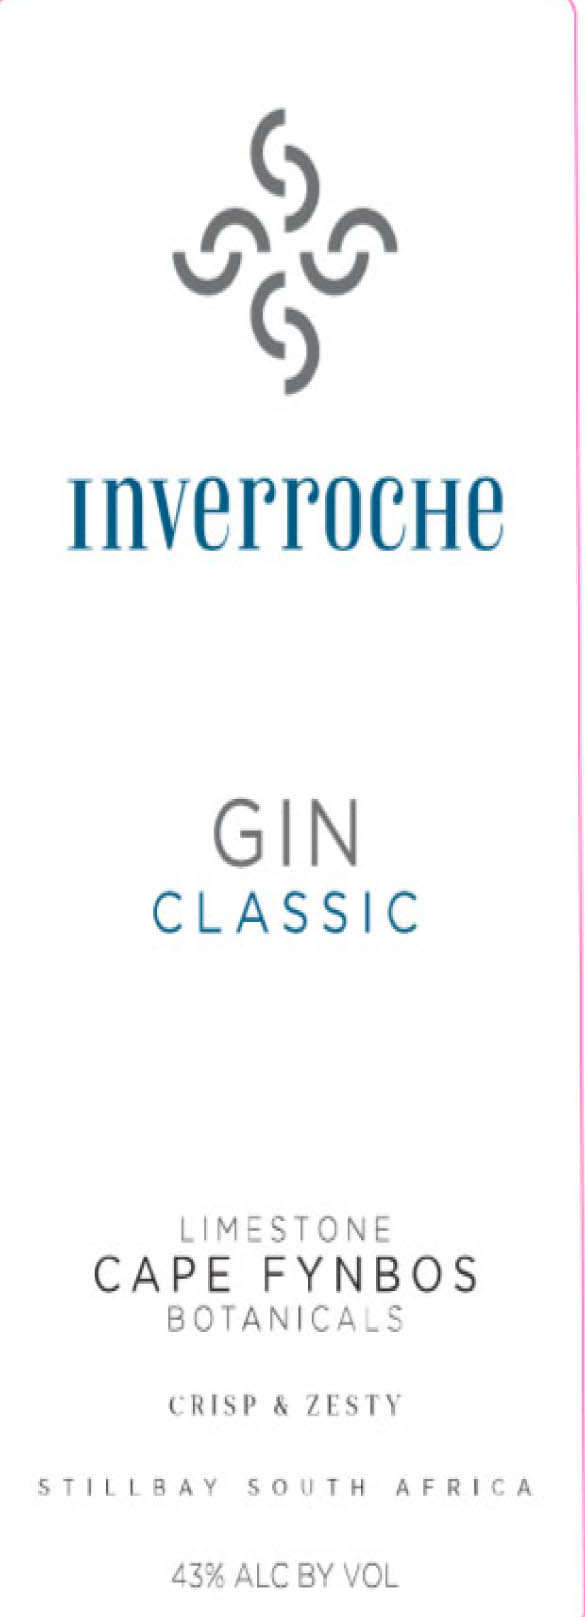 Inverroche Gin - Classic label